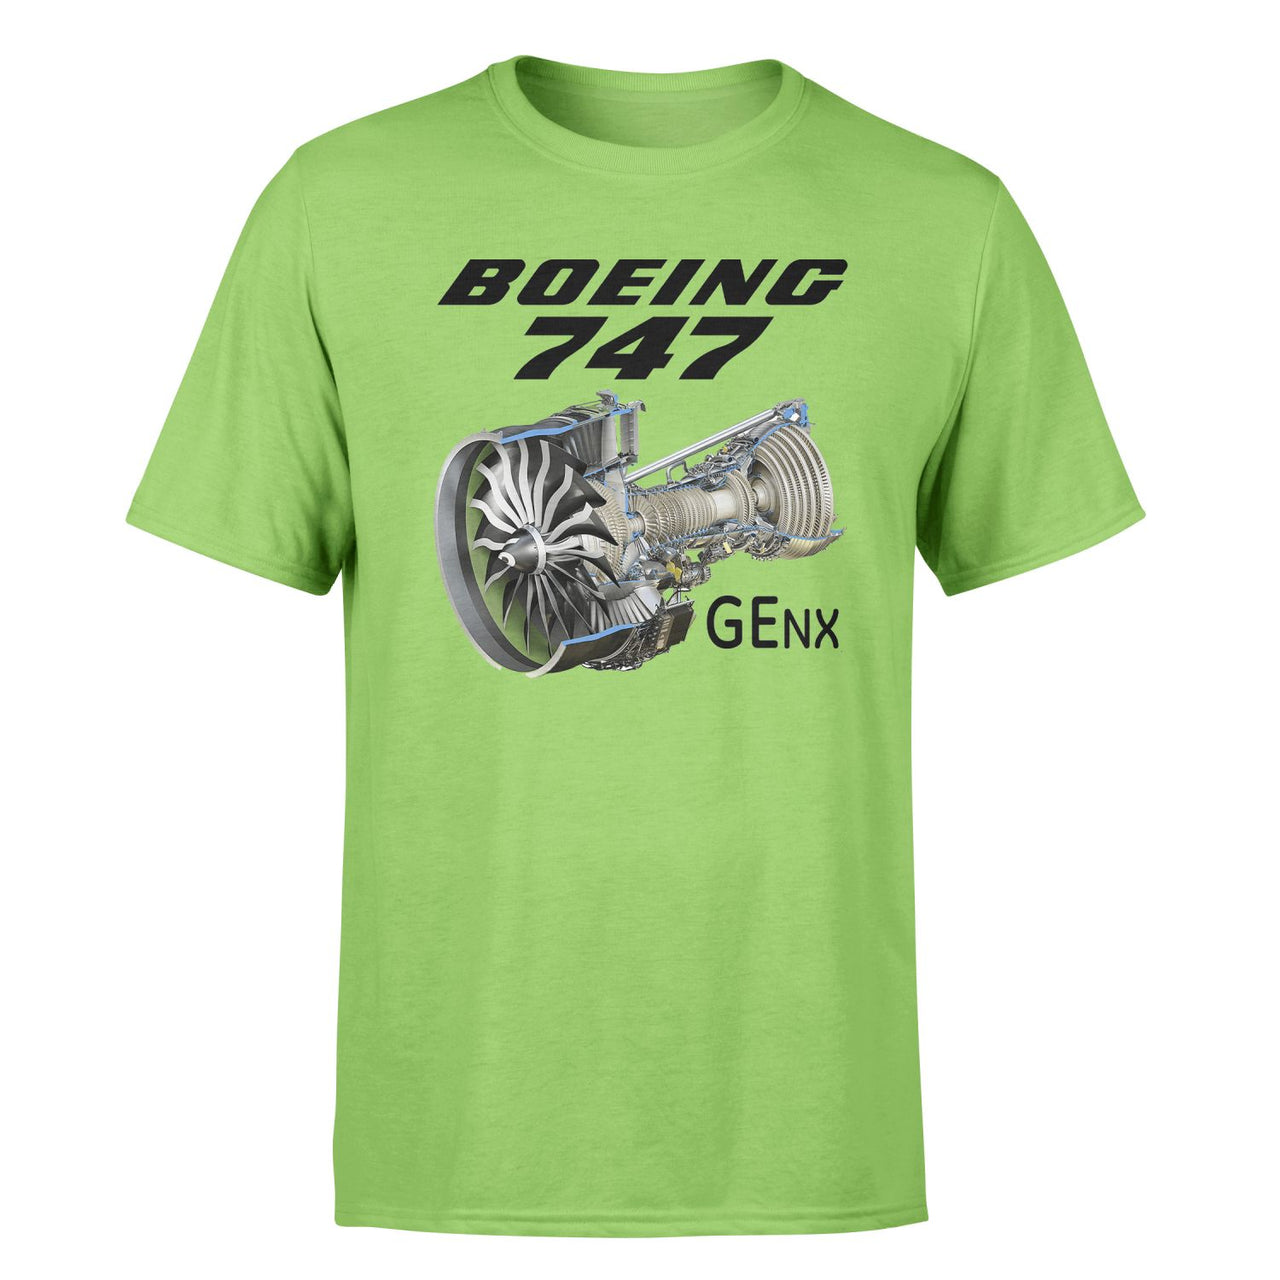 Boeing 747 & GENX Engine Designed T-Shirts